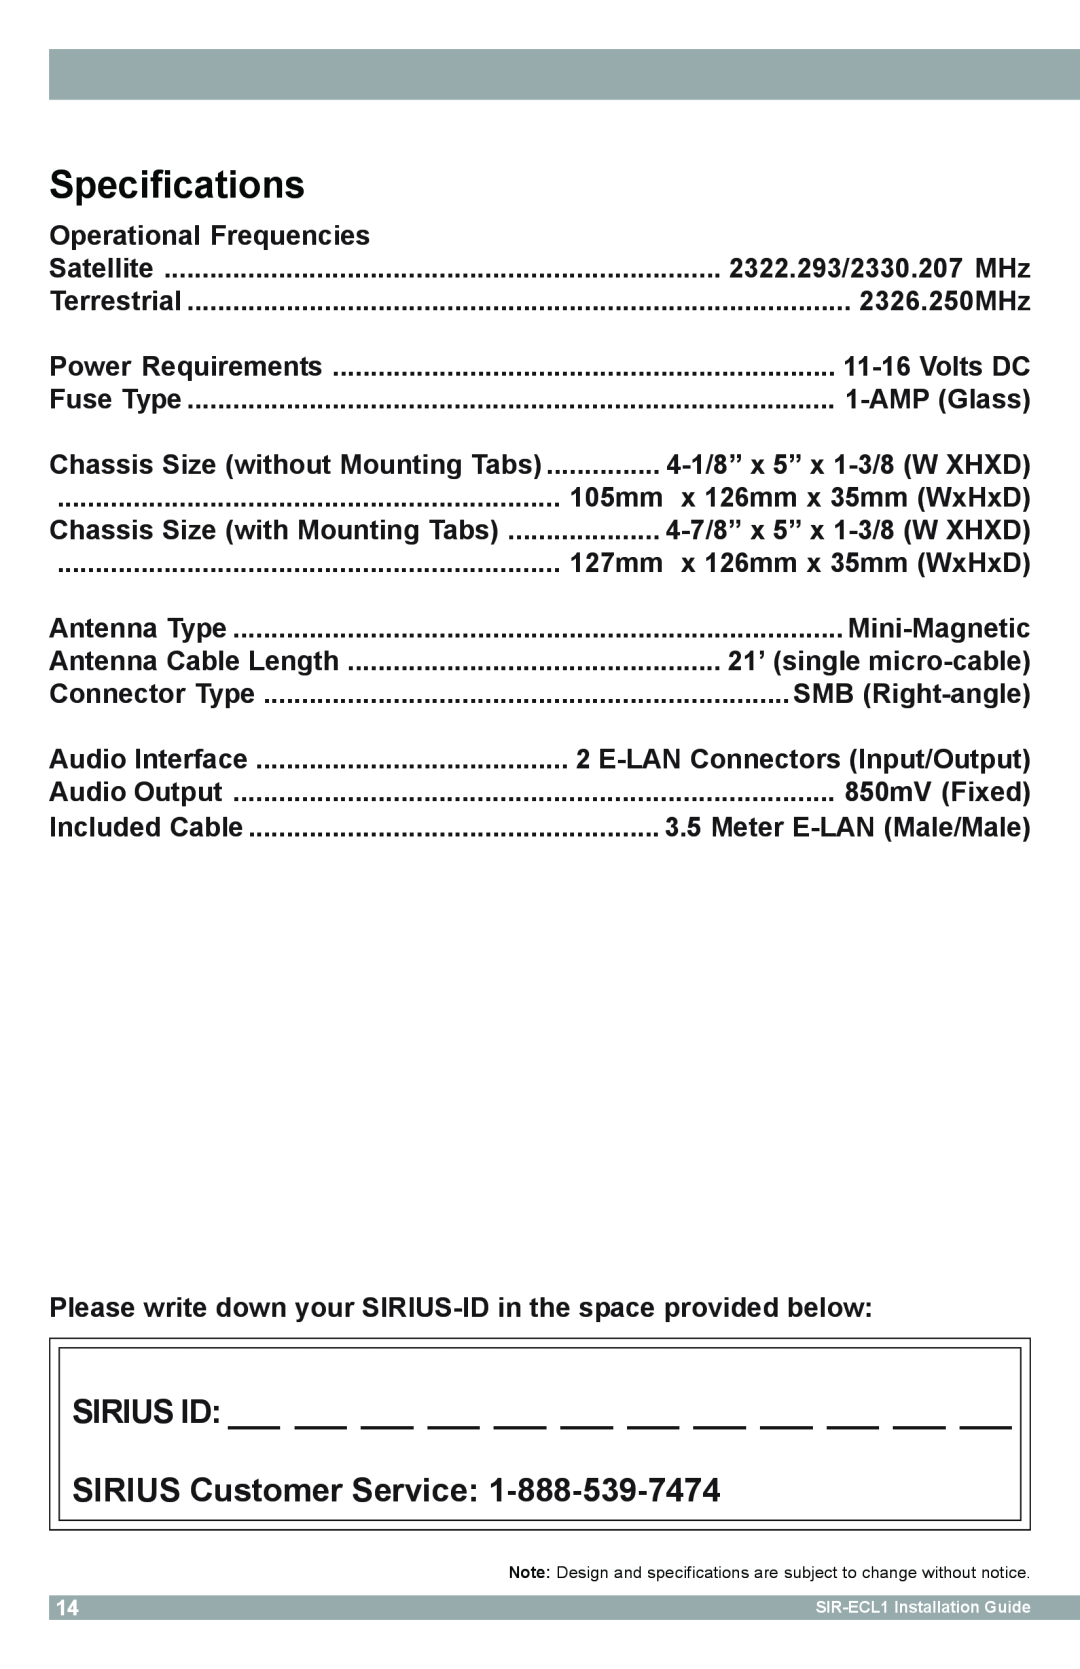 Sirius Satellite Radio SIR-ECL1 manual Specifications, SIRIUS Customer Service 